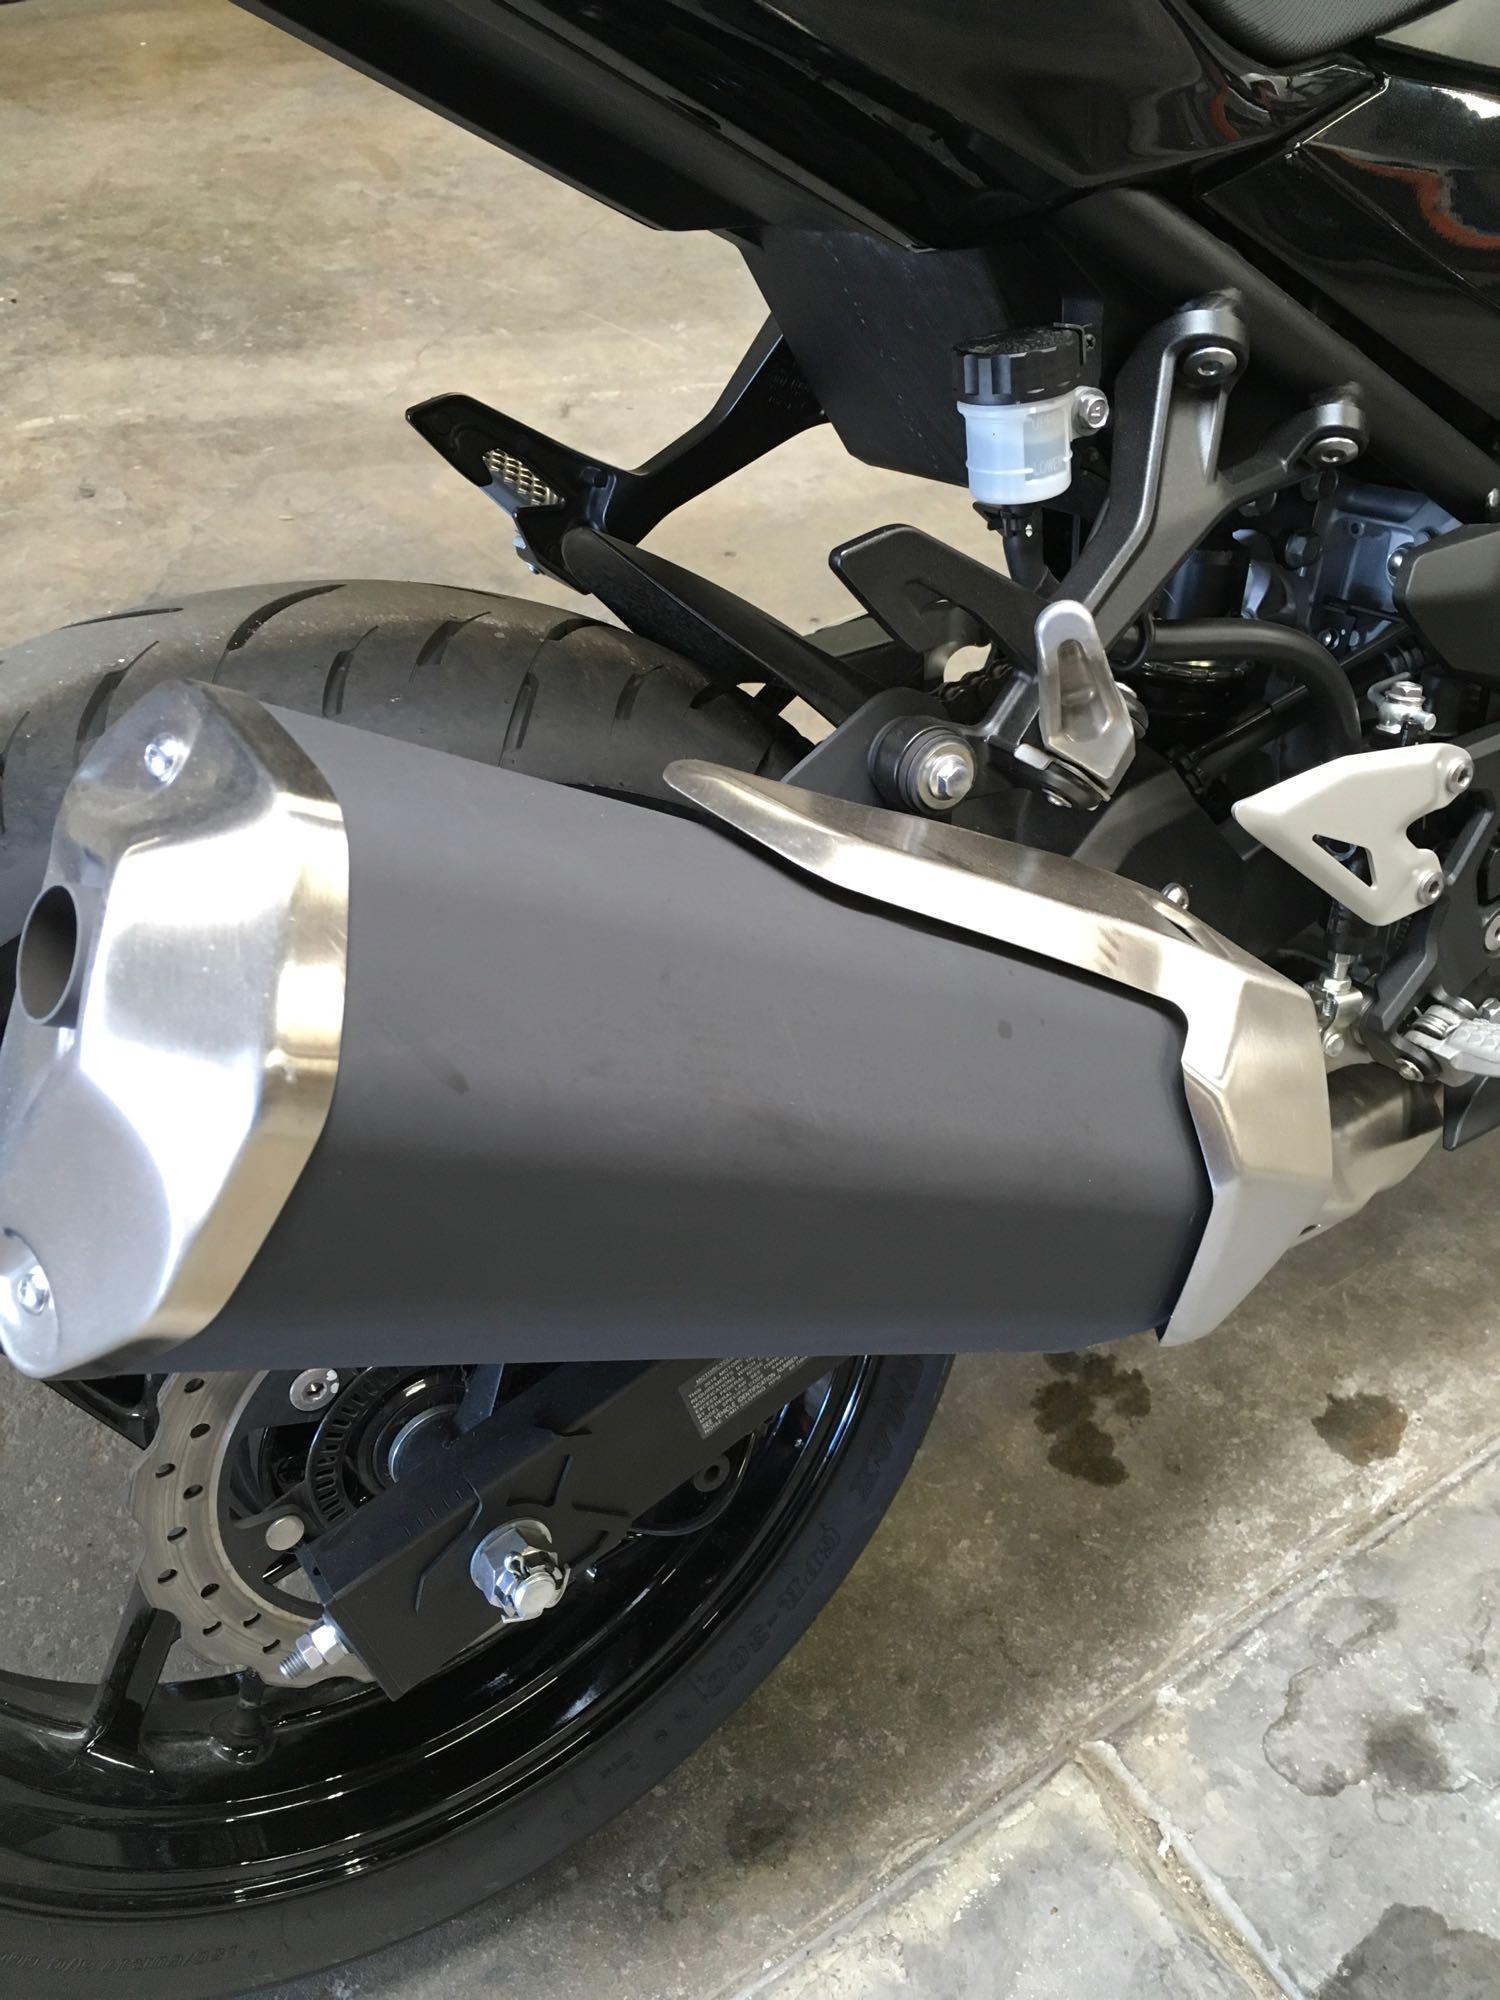 2018 Kawasaki EX 400 Motorcycle